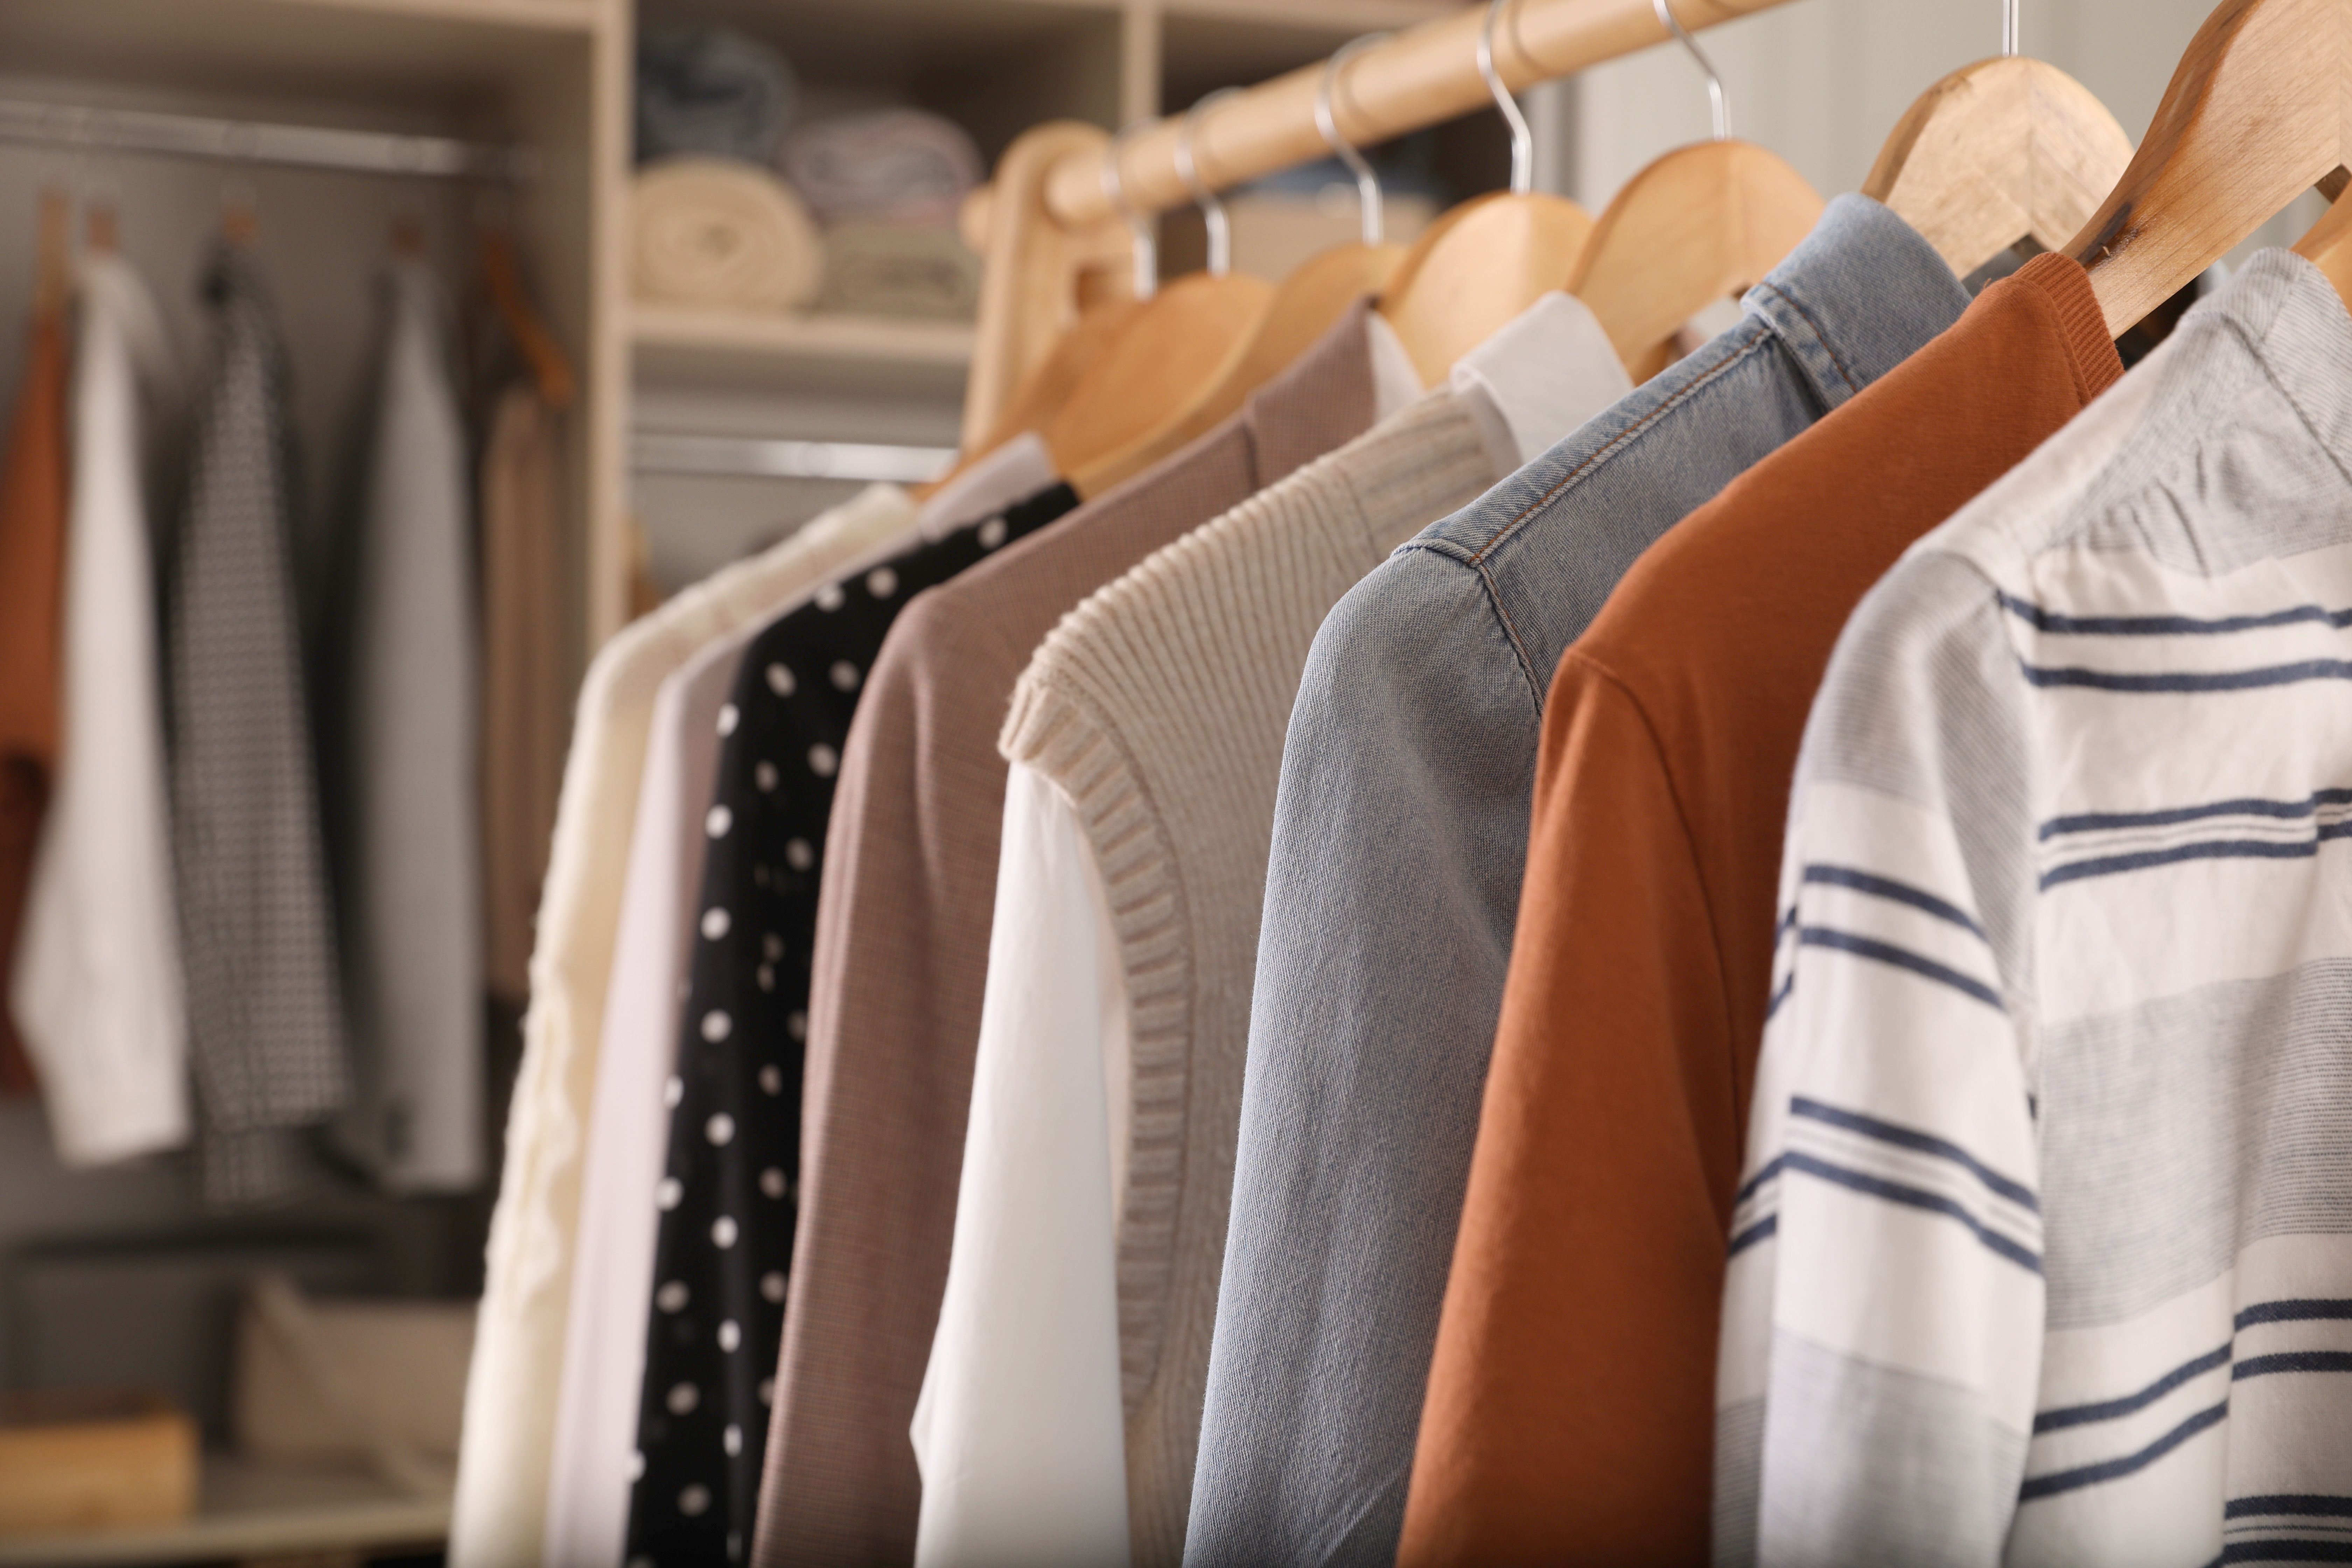 VÍDEO: Cómo guardar las prendas largas en el armario para evitar que se arruguen